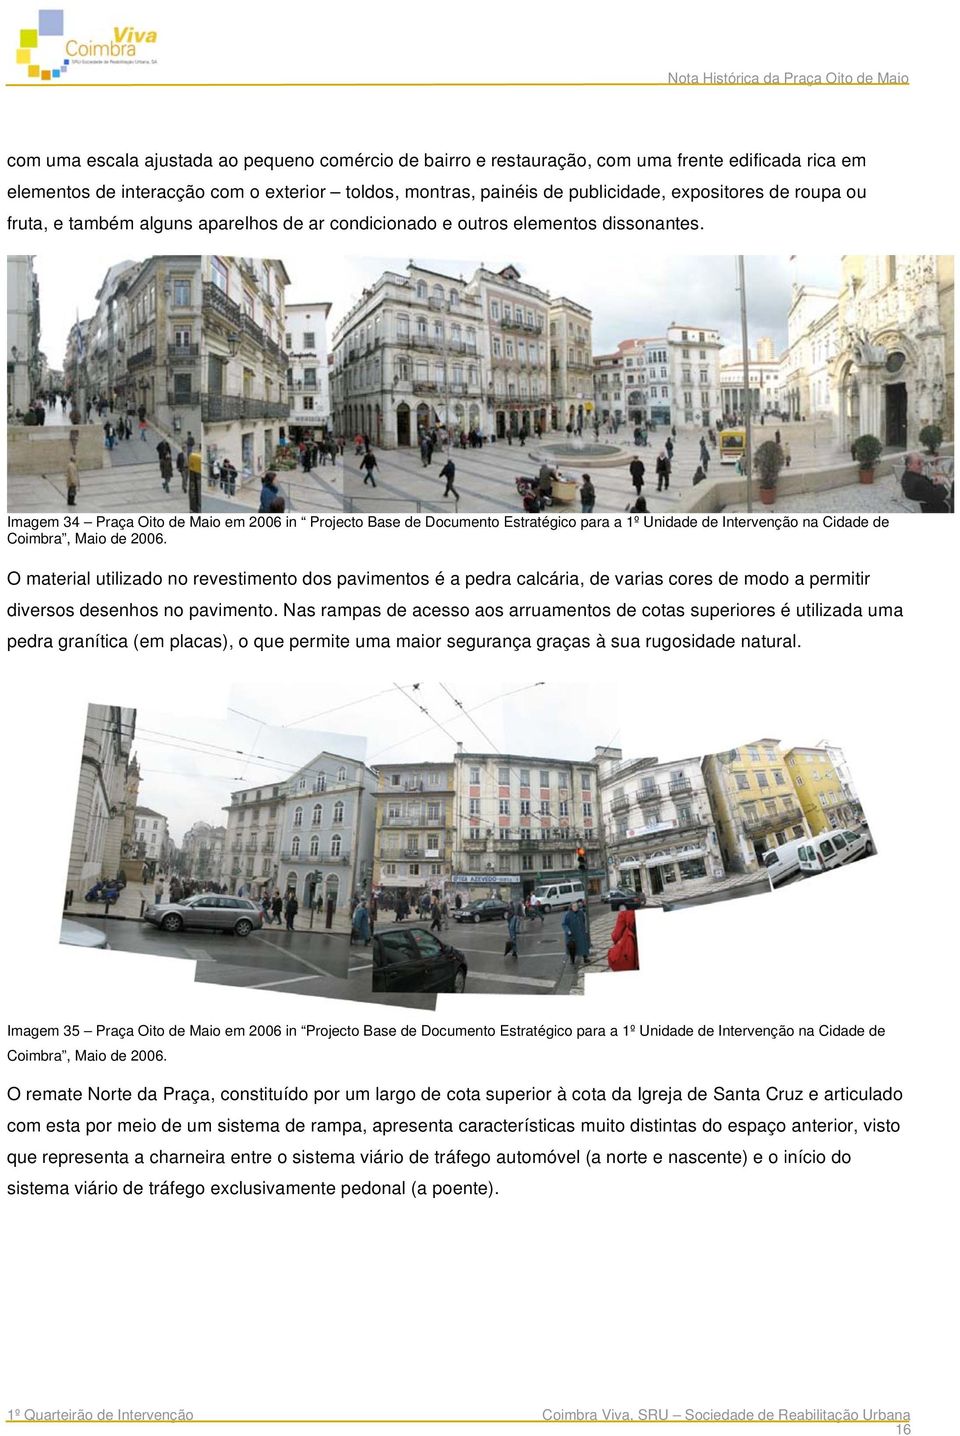 Imagem 34 Praça Oito de Maio em 2006 in Projecto Base de Documento Estratégico para a 1º Unidade de Intervenção na Cidade de Coimbra, Maio de 2006.